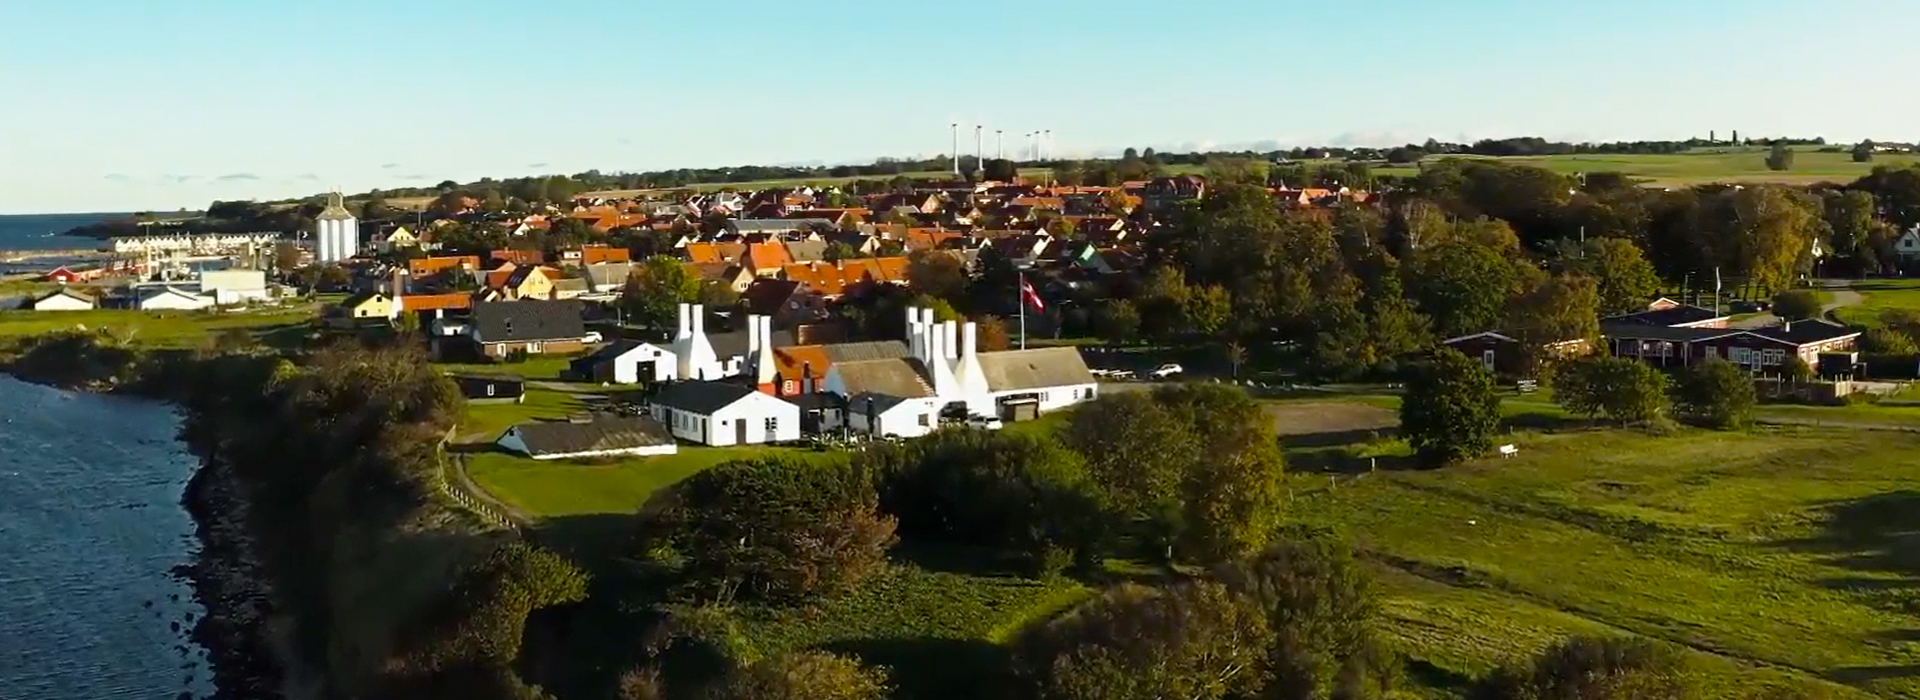 EBK HUSE Sommerhusgrunde til salg på Bornholm